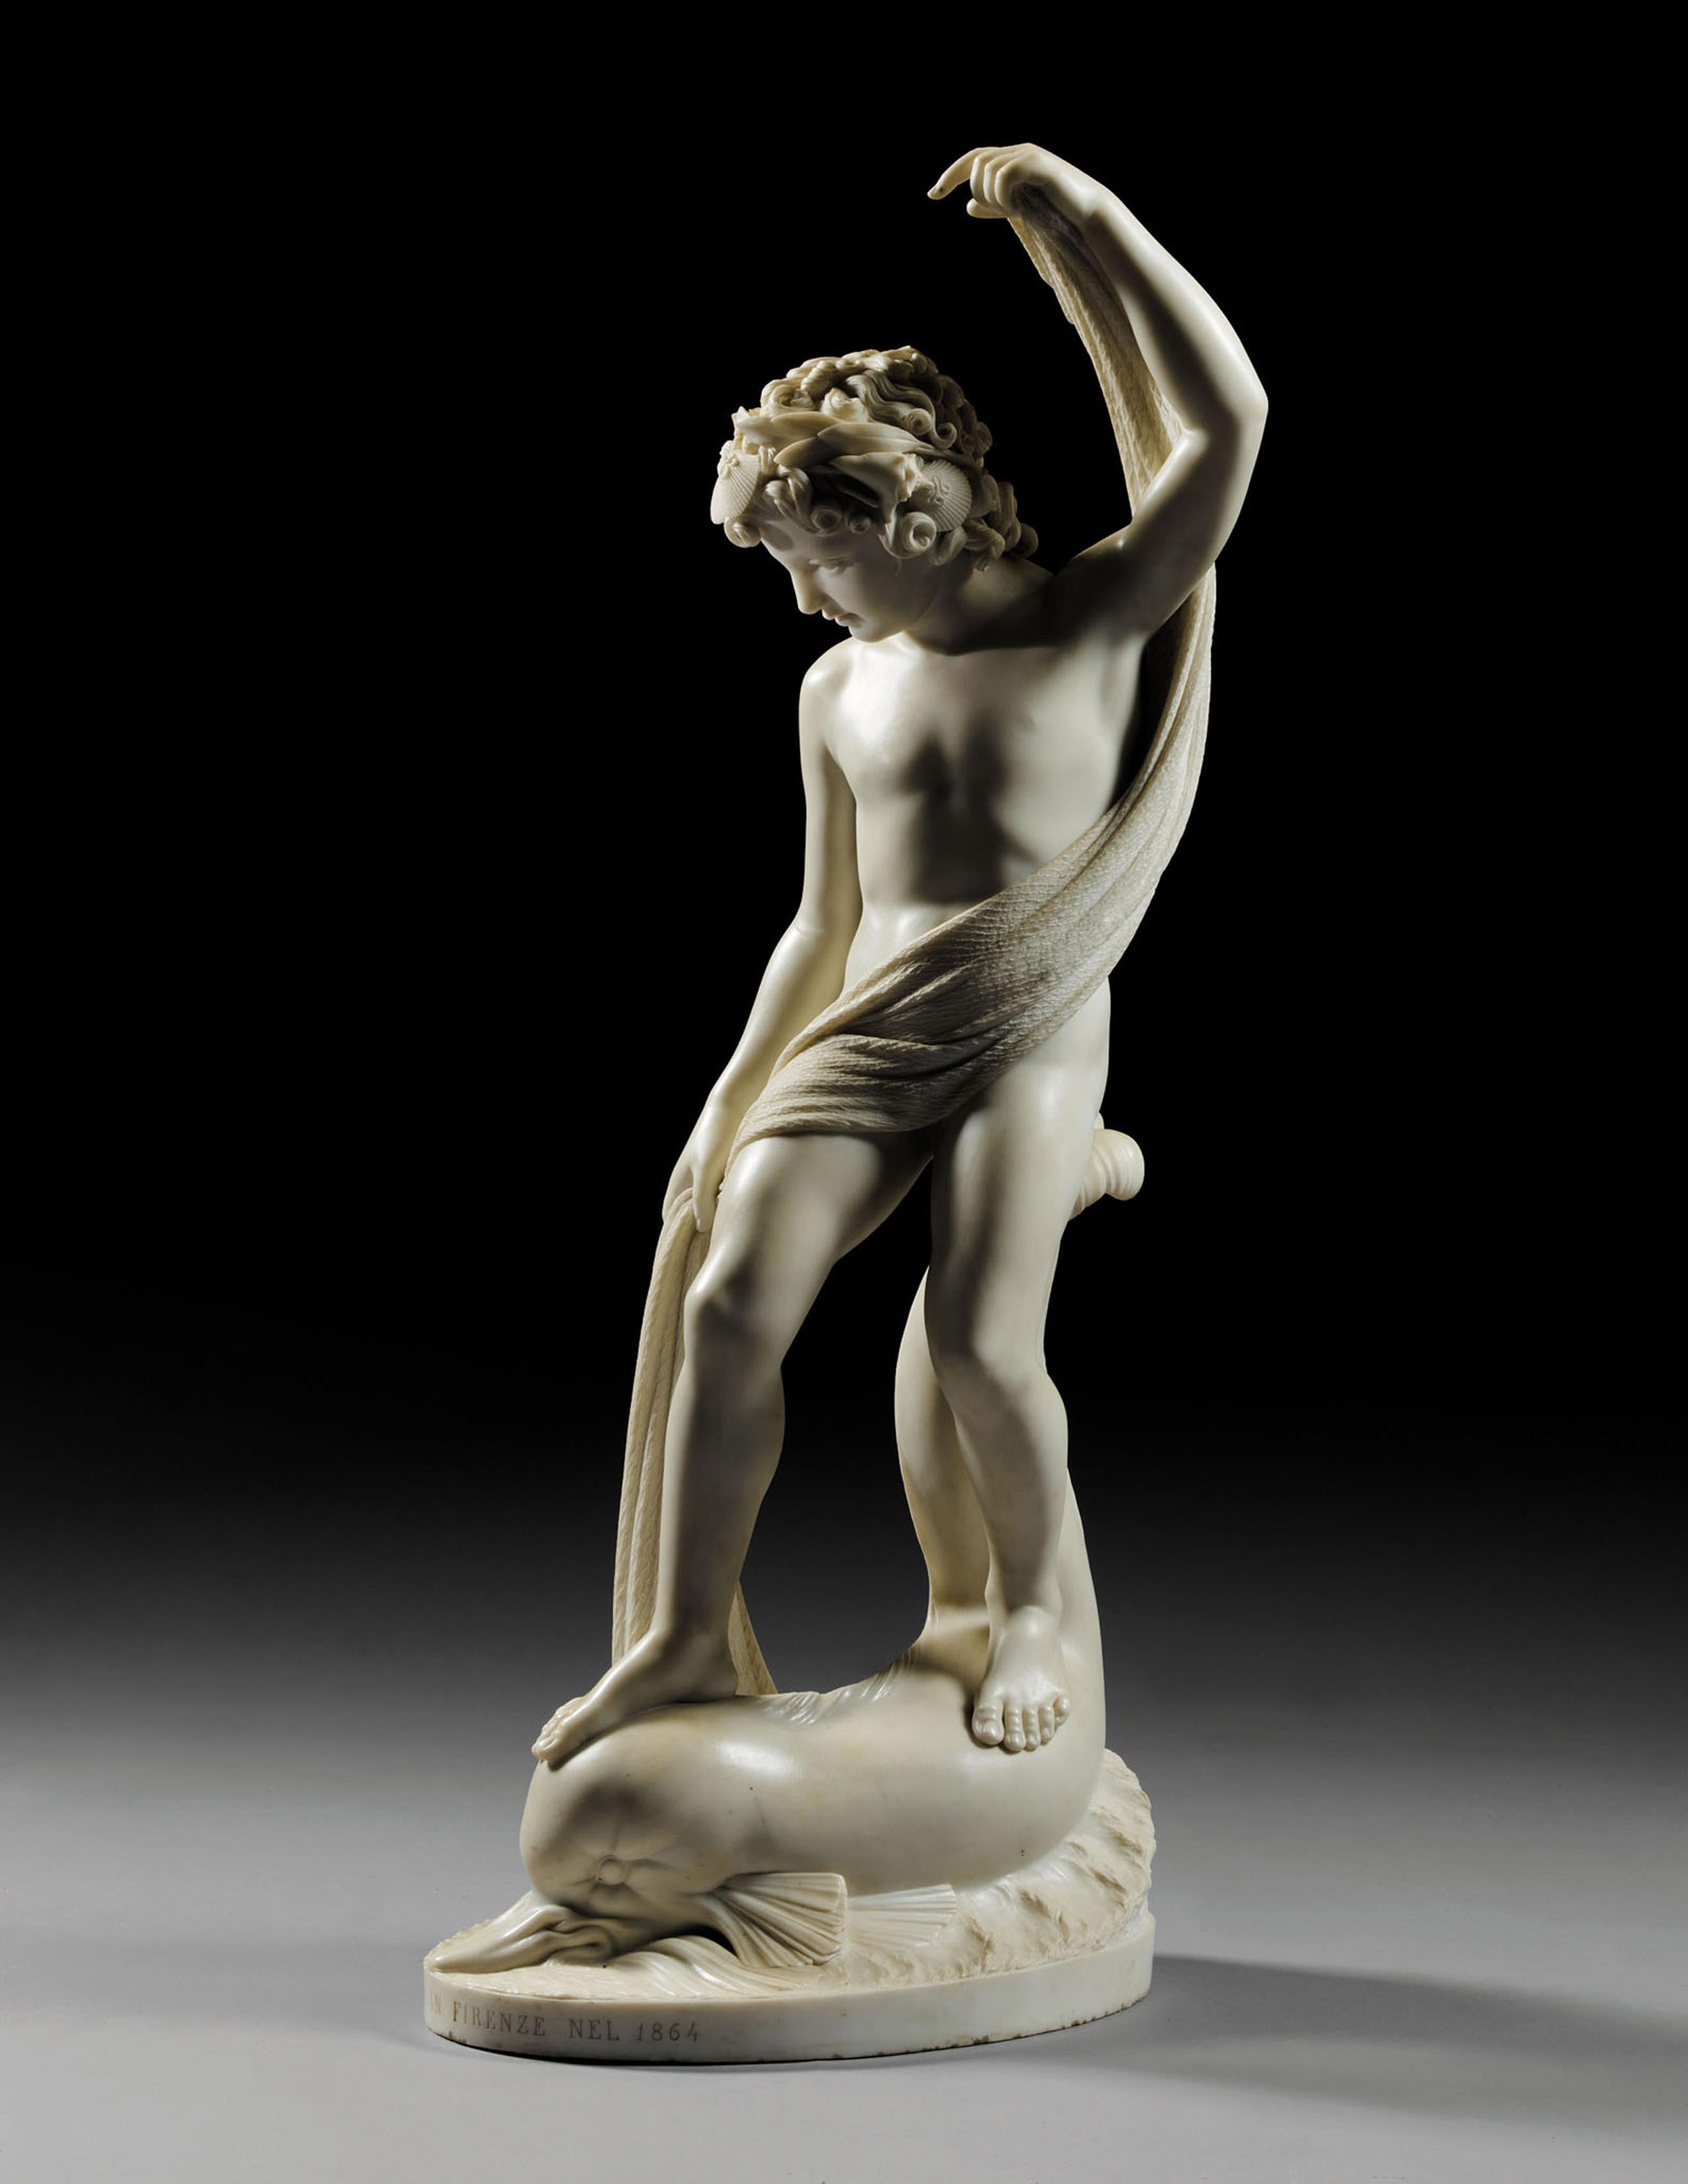 Die Statue des Supreme Fisher Boy aus Carrara-Marmor